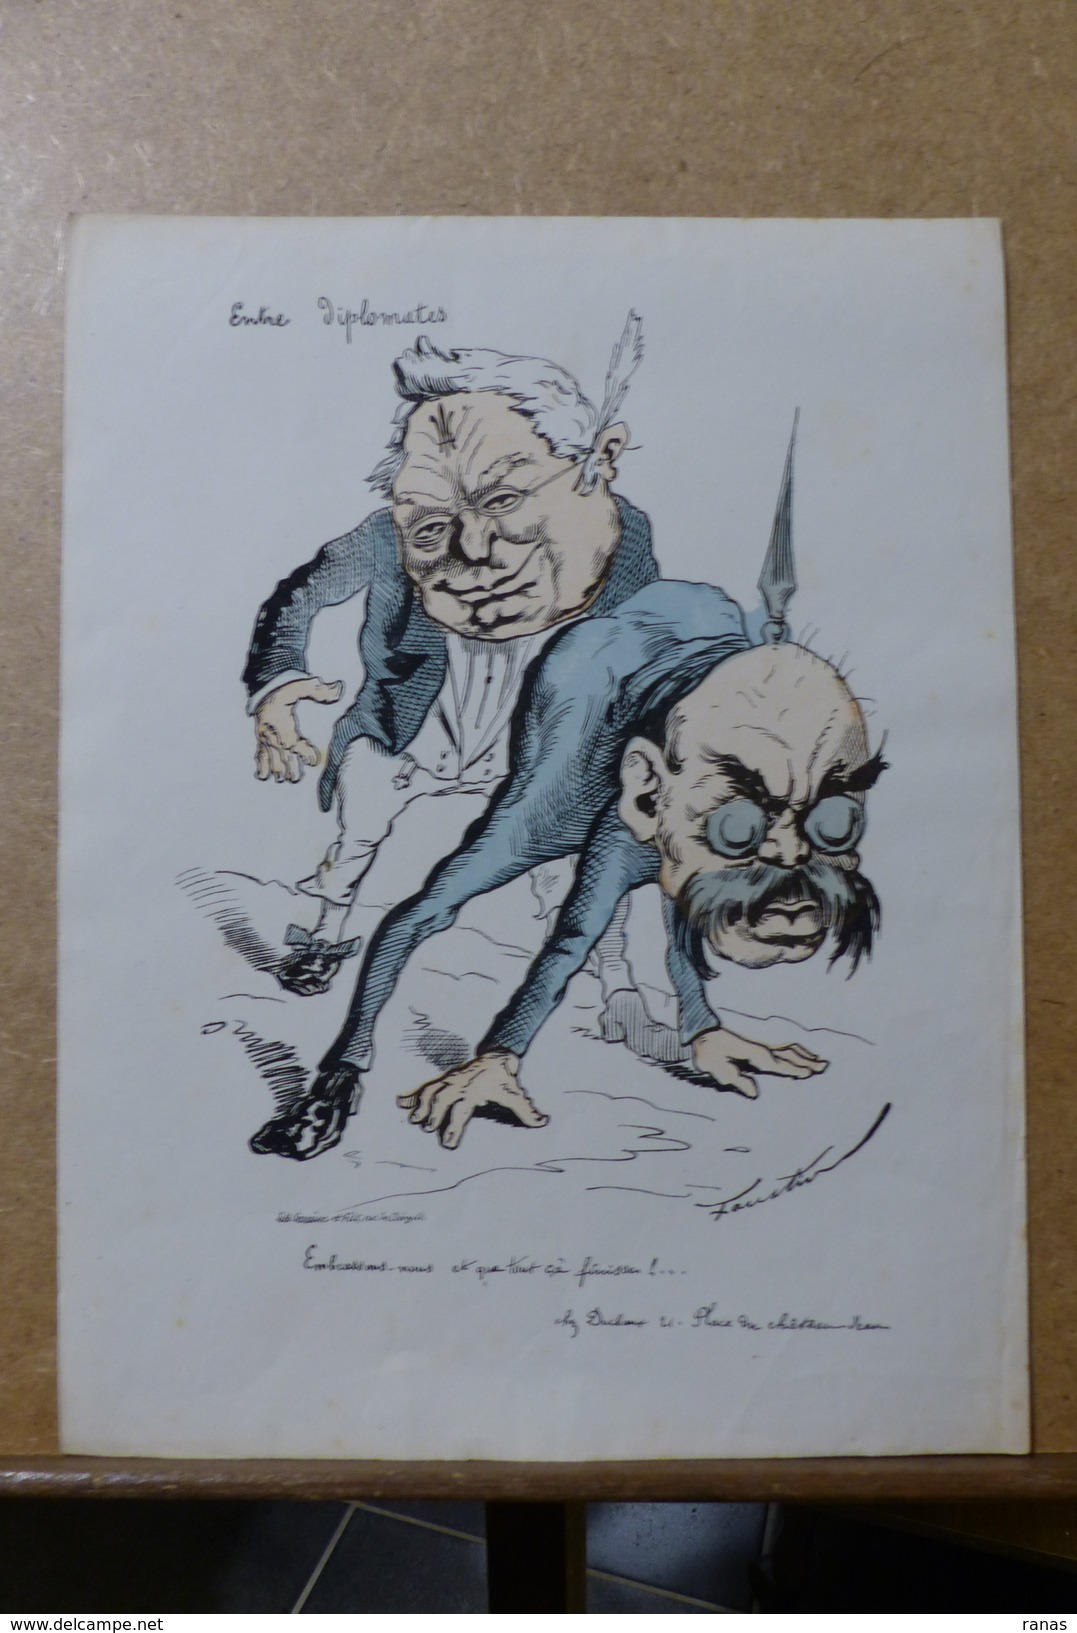 Estampe Gravure Satirique Caricature D'époque 1870  Bismarck Thiers Faustin 36 X 27,5 - Prints & Engravings